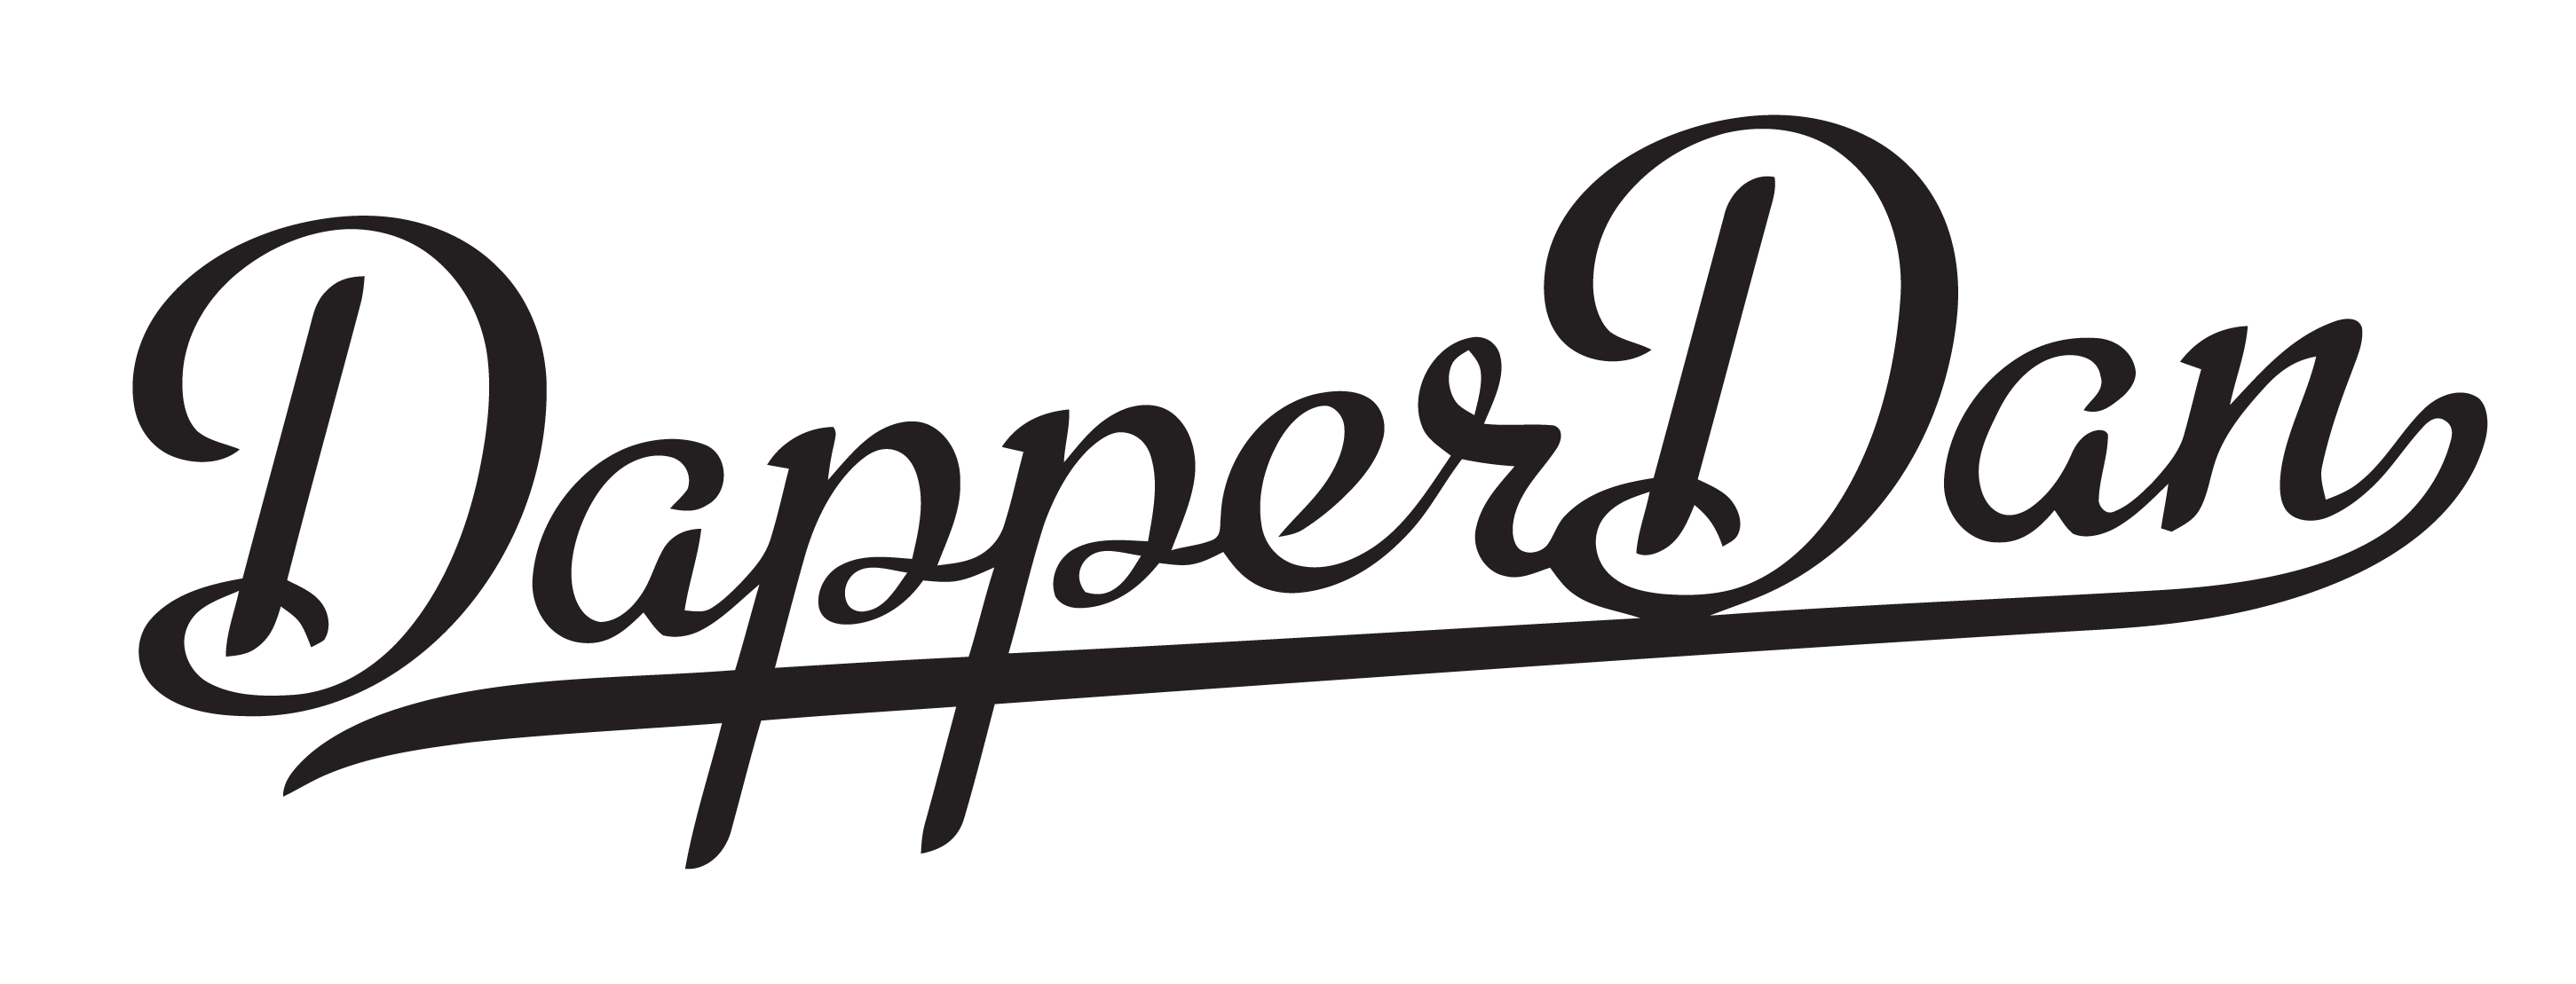 Dapper Dan (designer) - Wikipedia